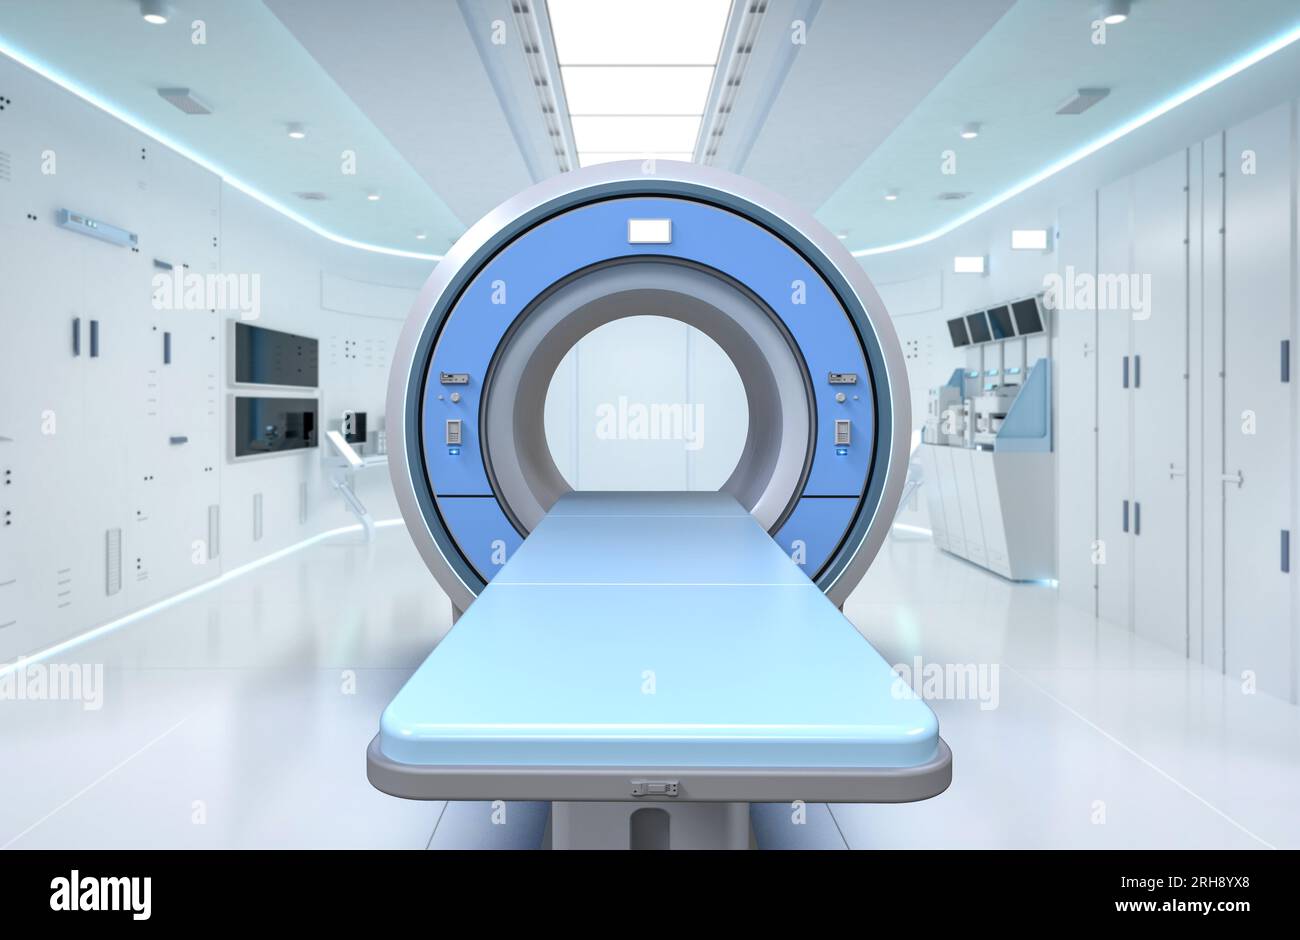 Salle de radiologie hospitalière avec scanner irm de rendu 3D. Banque D'Images